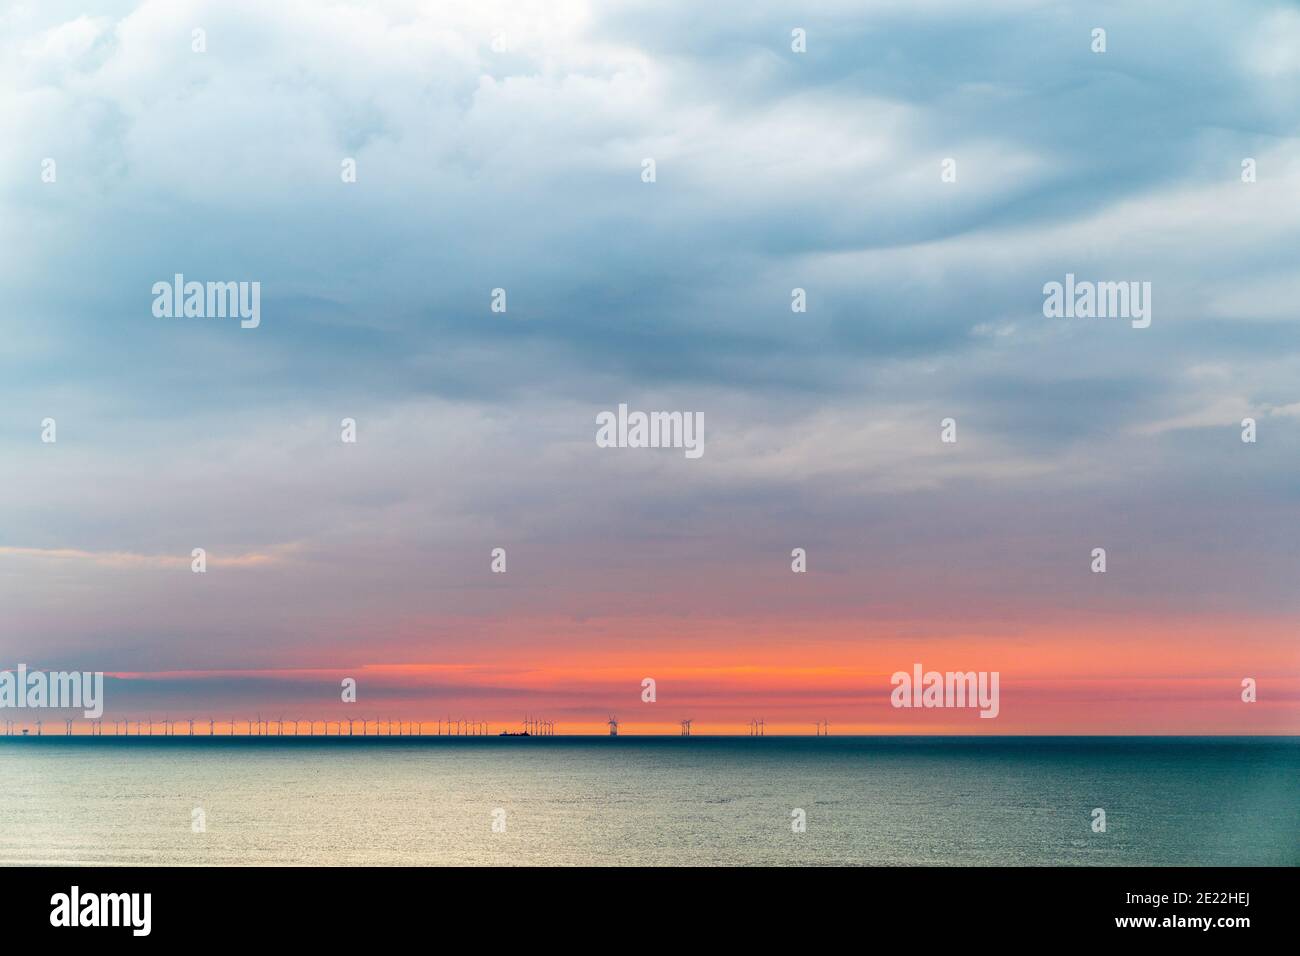 El parque eólico marino Thanet en el horizonte de la costa de Kent. Amanecer, cielo del amanecer, banda de cielo rojo en el horizonte bajo con nubes grises pesadas por encima. Foto de stock